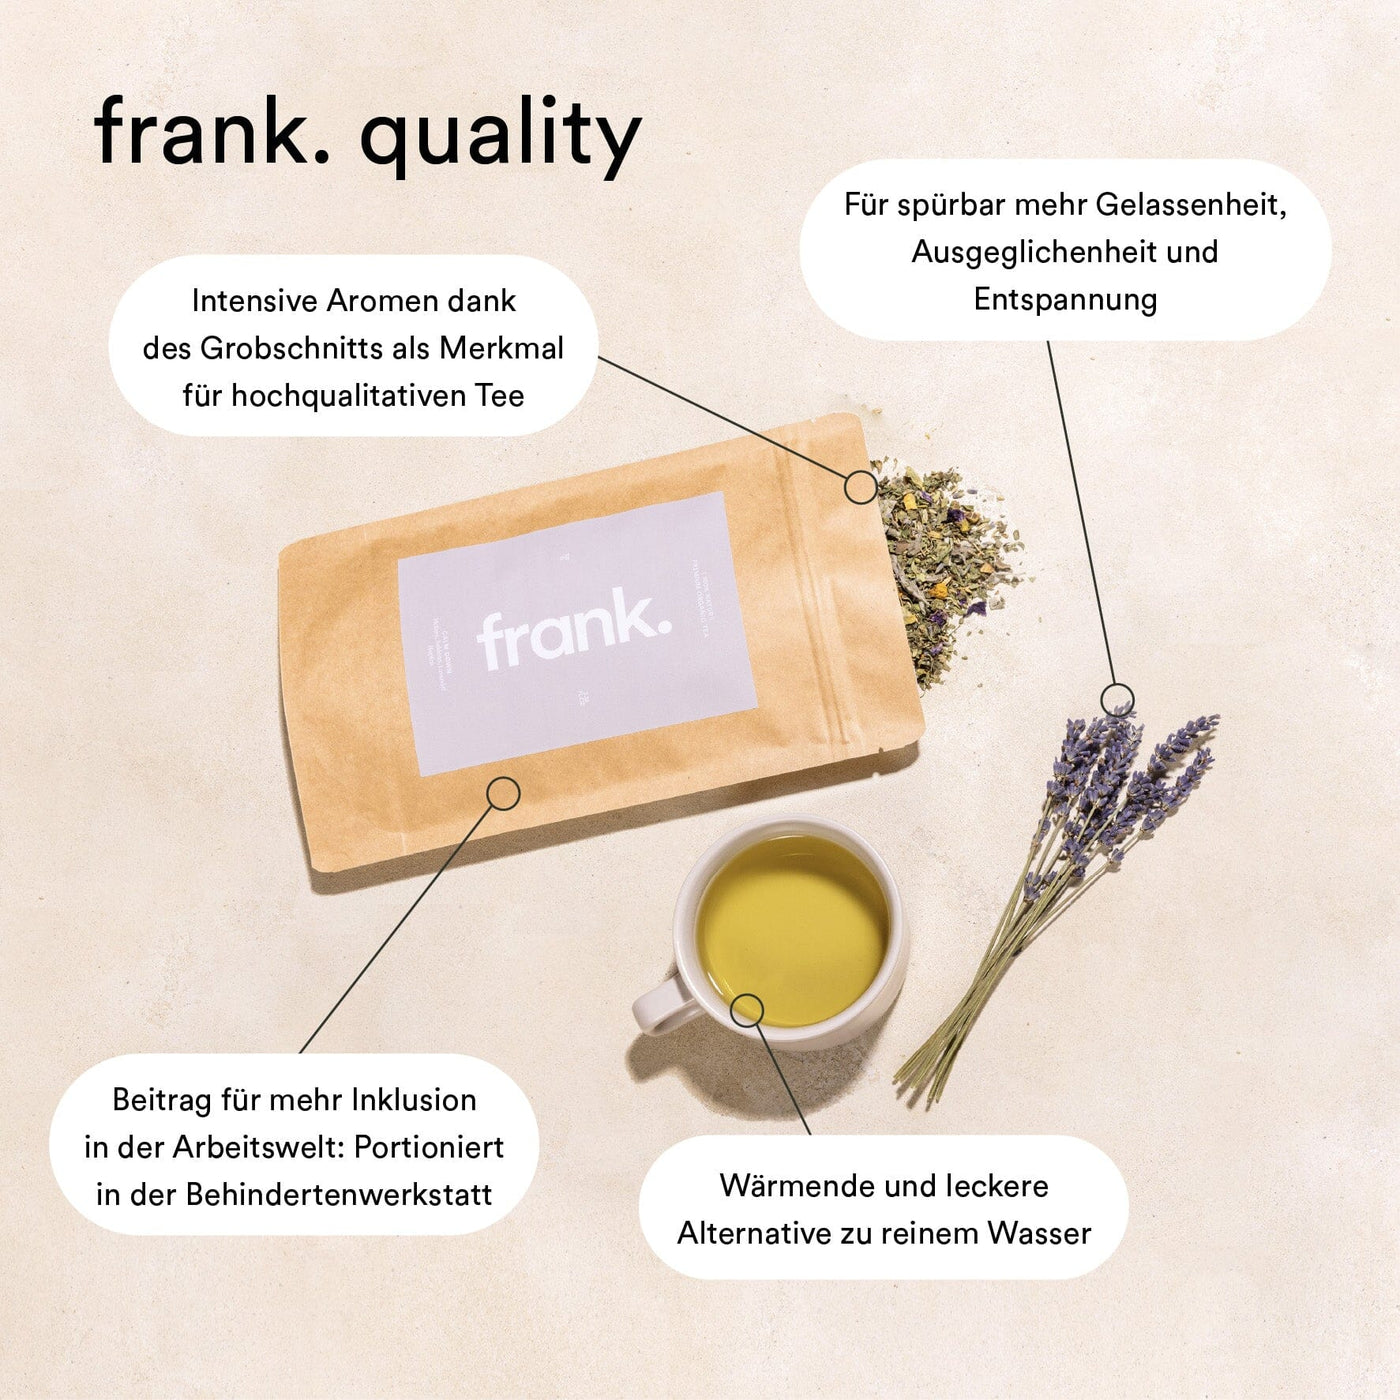 Darstellung der gebotenen Qualität der frank. bio Tees.